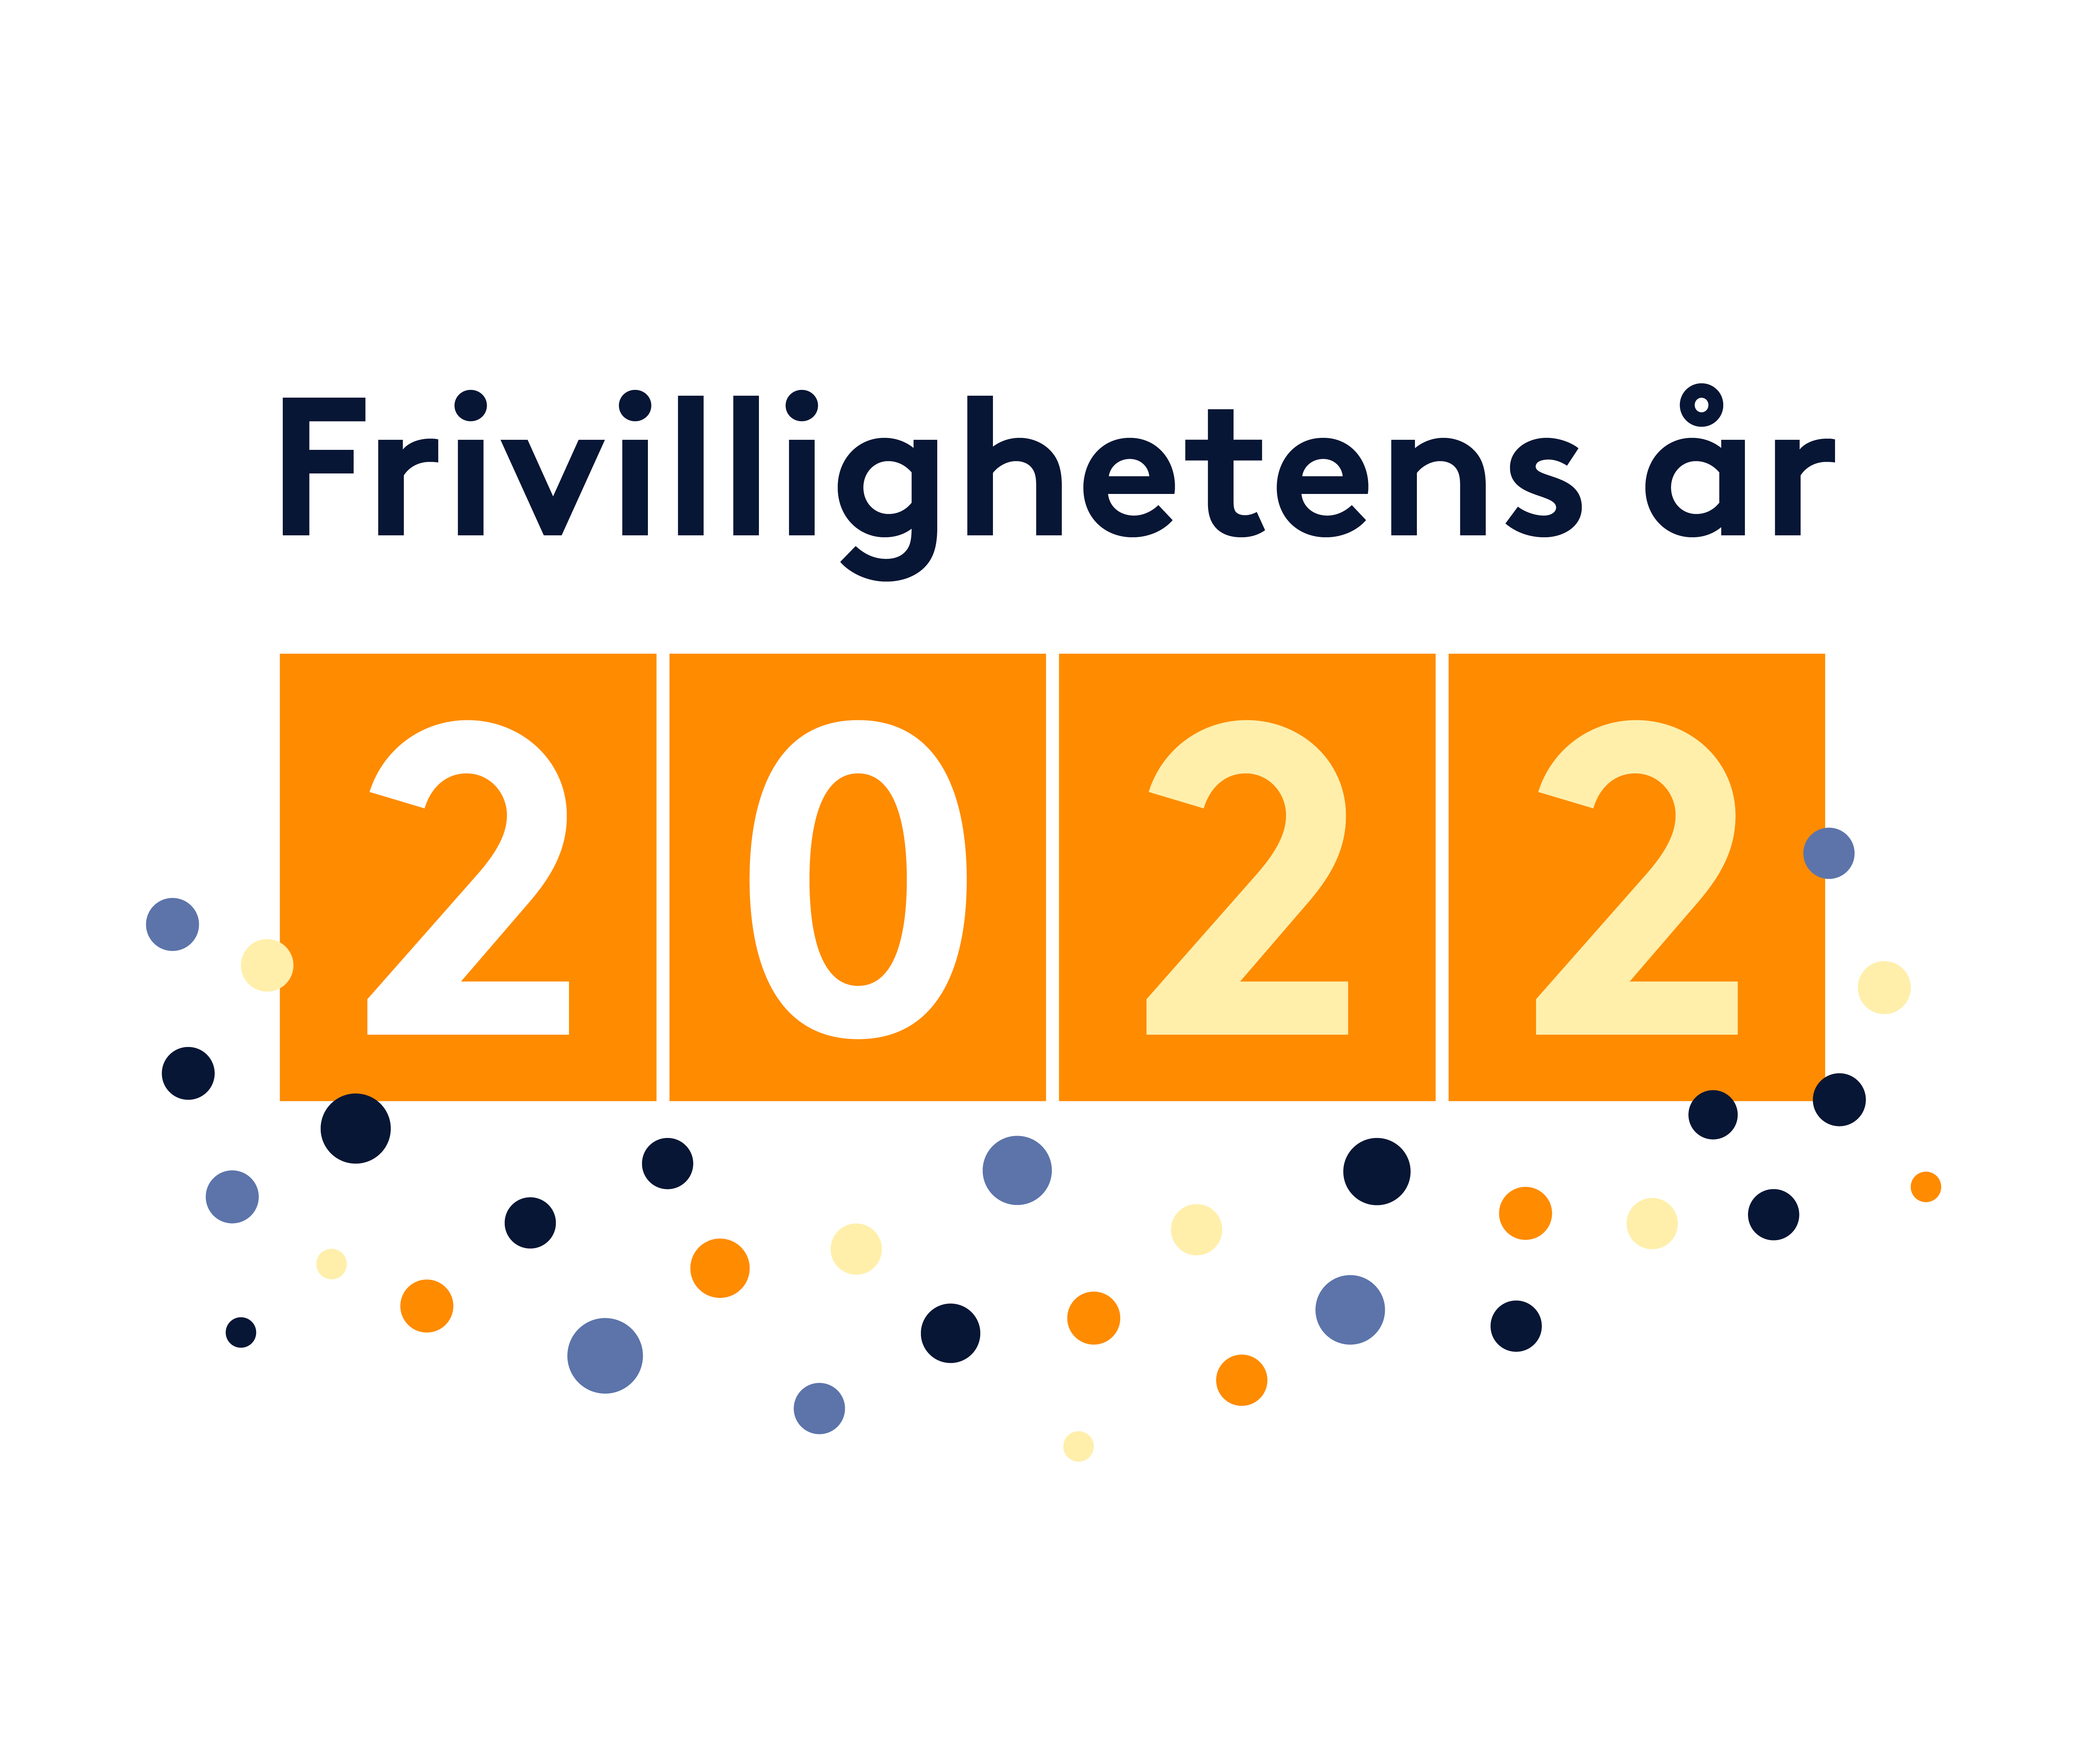 Frivillighetens år 2022 - VÅR DAG logo